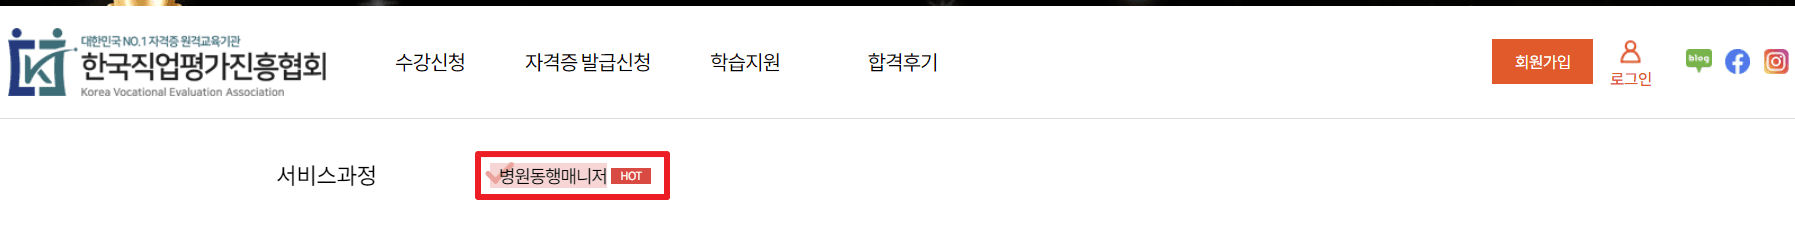 한국자격금정평가진흥원-병원동행매니저-무료수강신청방법